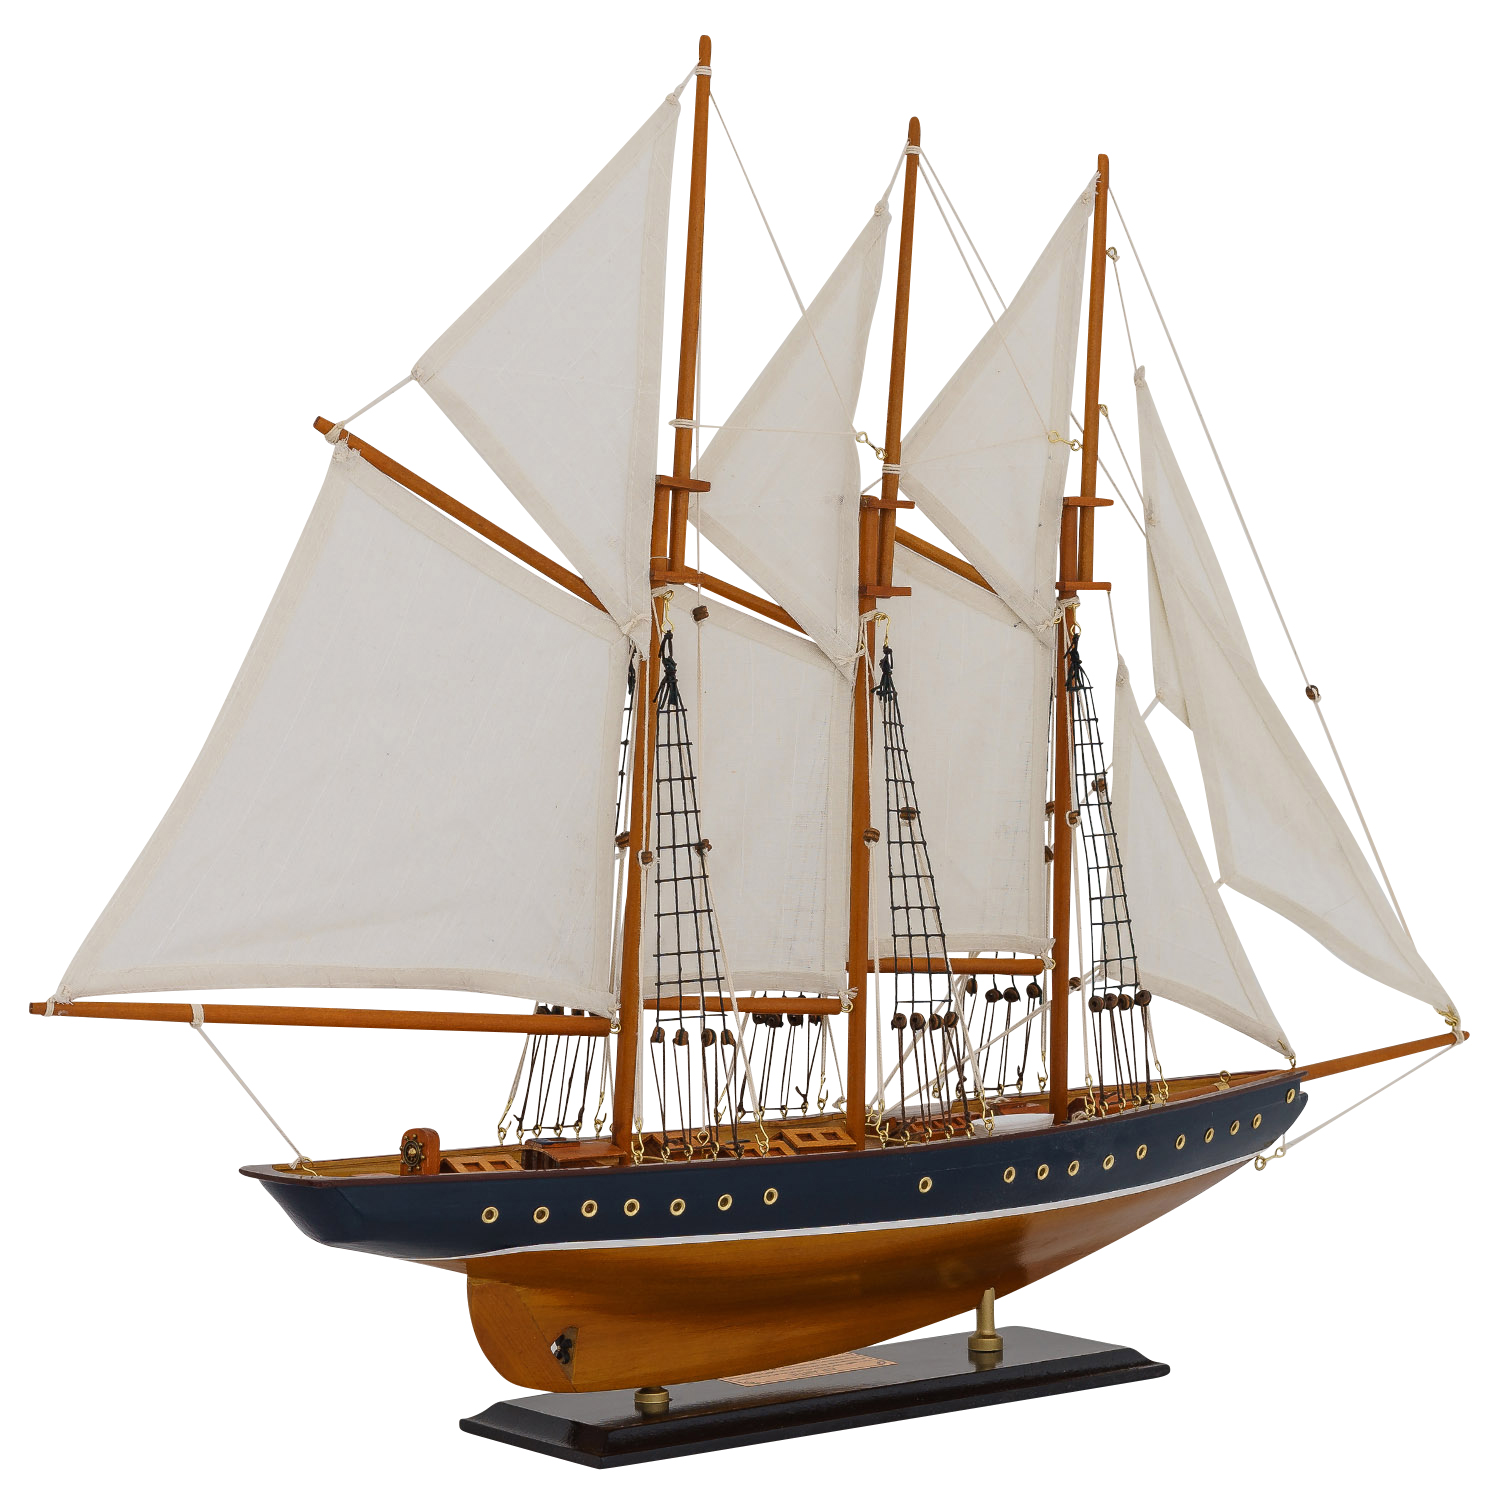 Modellschiff Atlantic Schiff Segelschiff Maritim Deko Antik-Stil kein Bausatz 